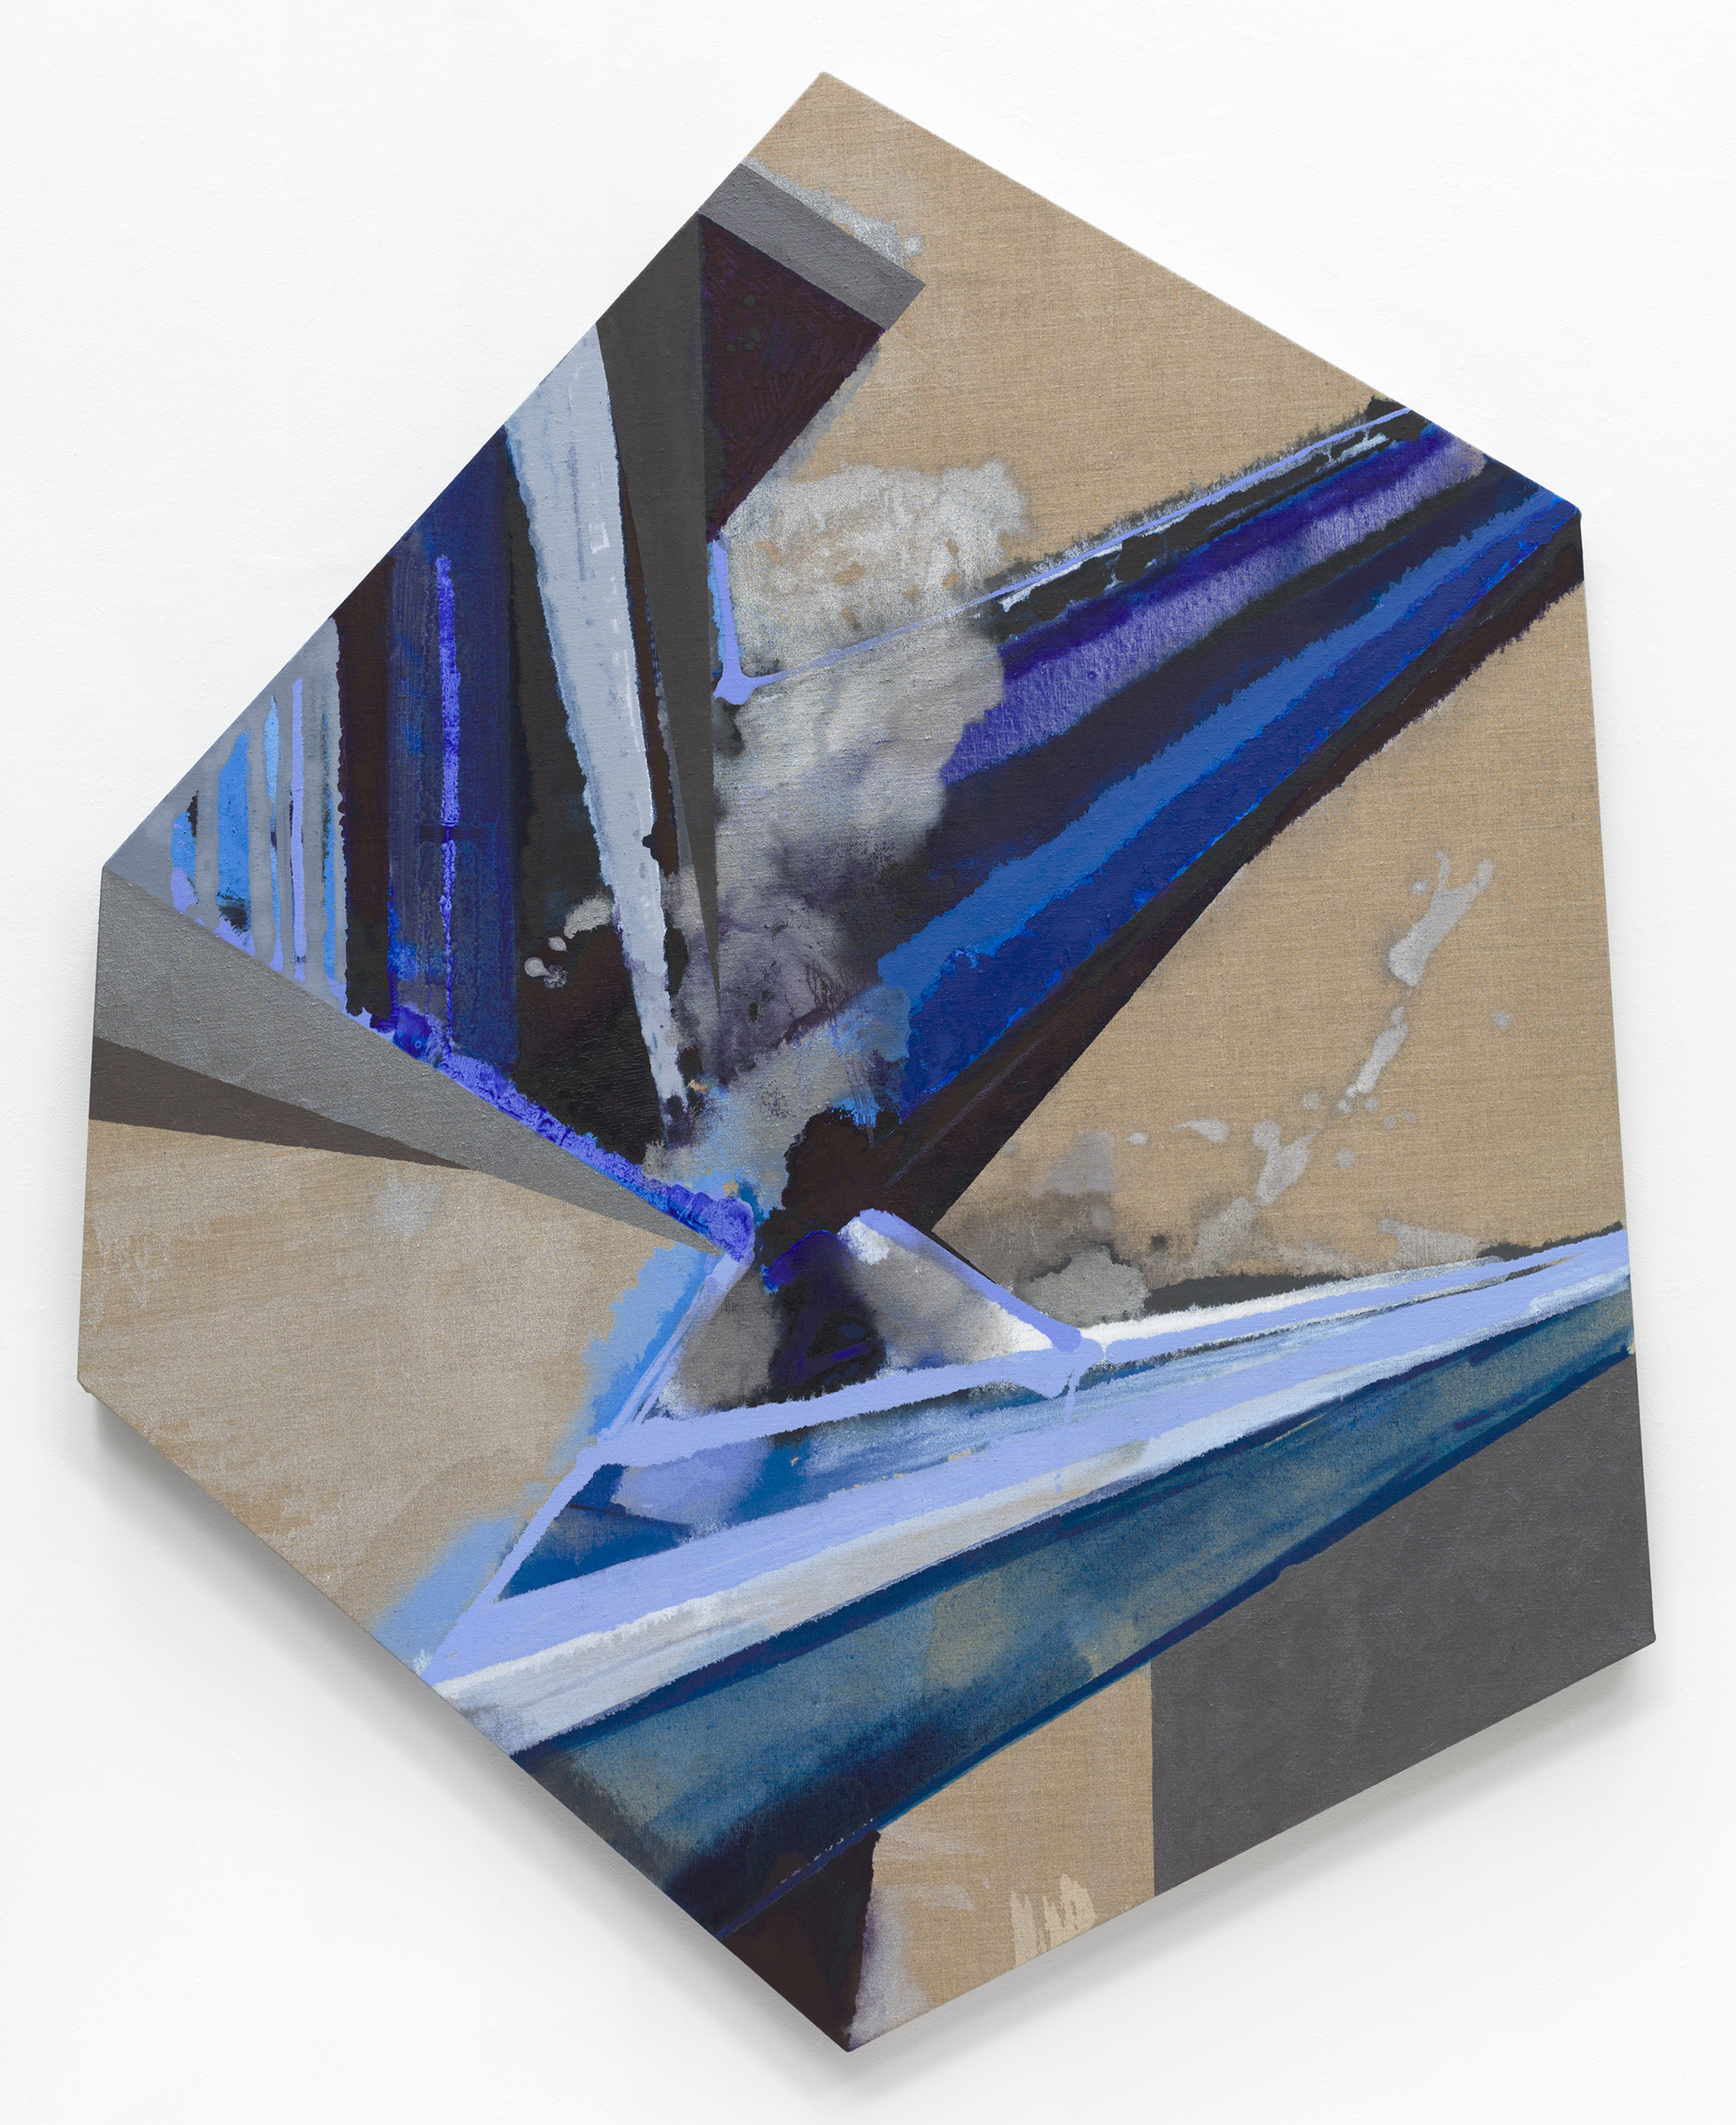   PAMELA JORDEN   Crane , oil on linen, 59.5" x 47.5", 2017 